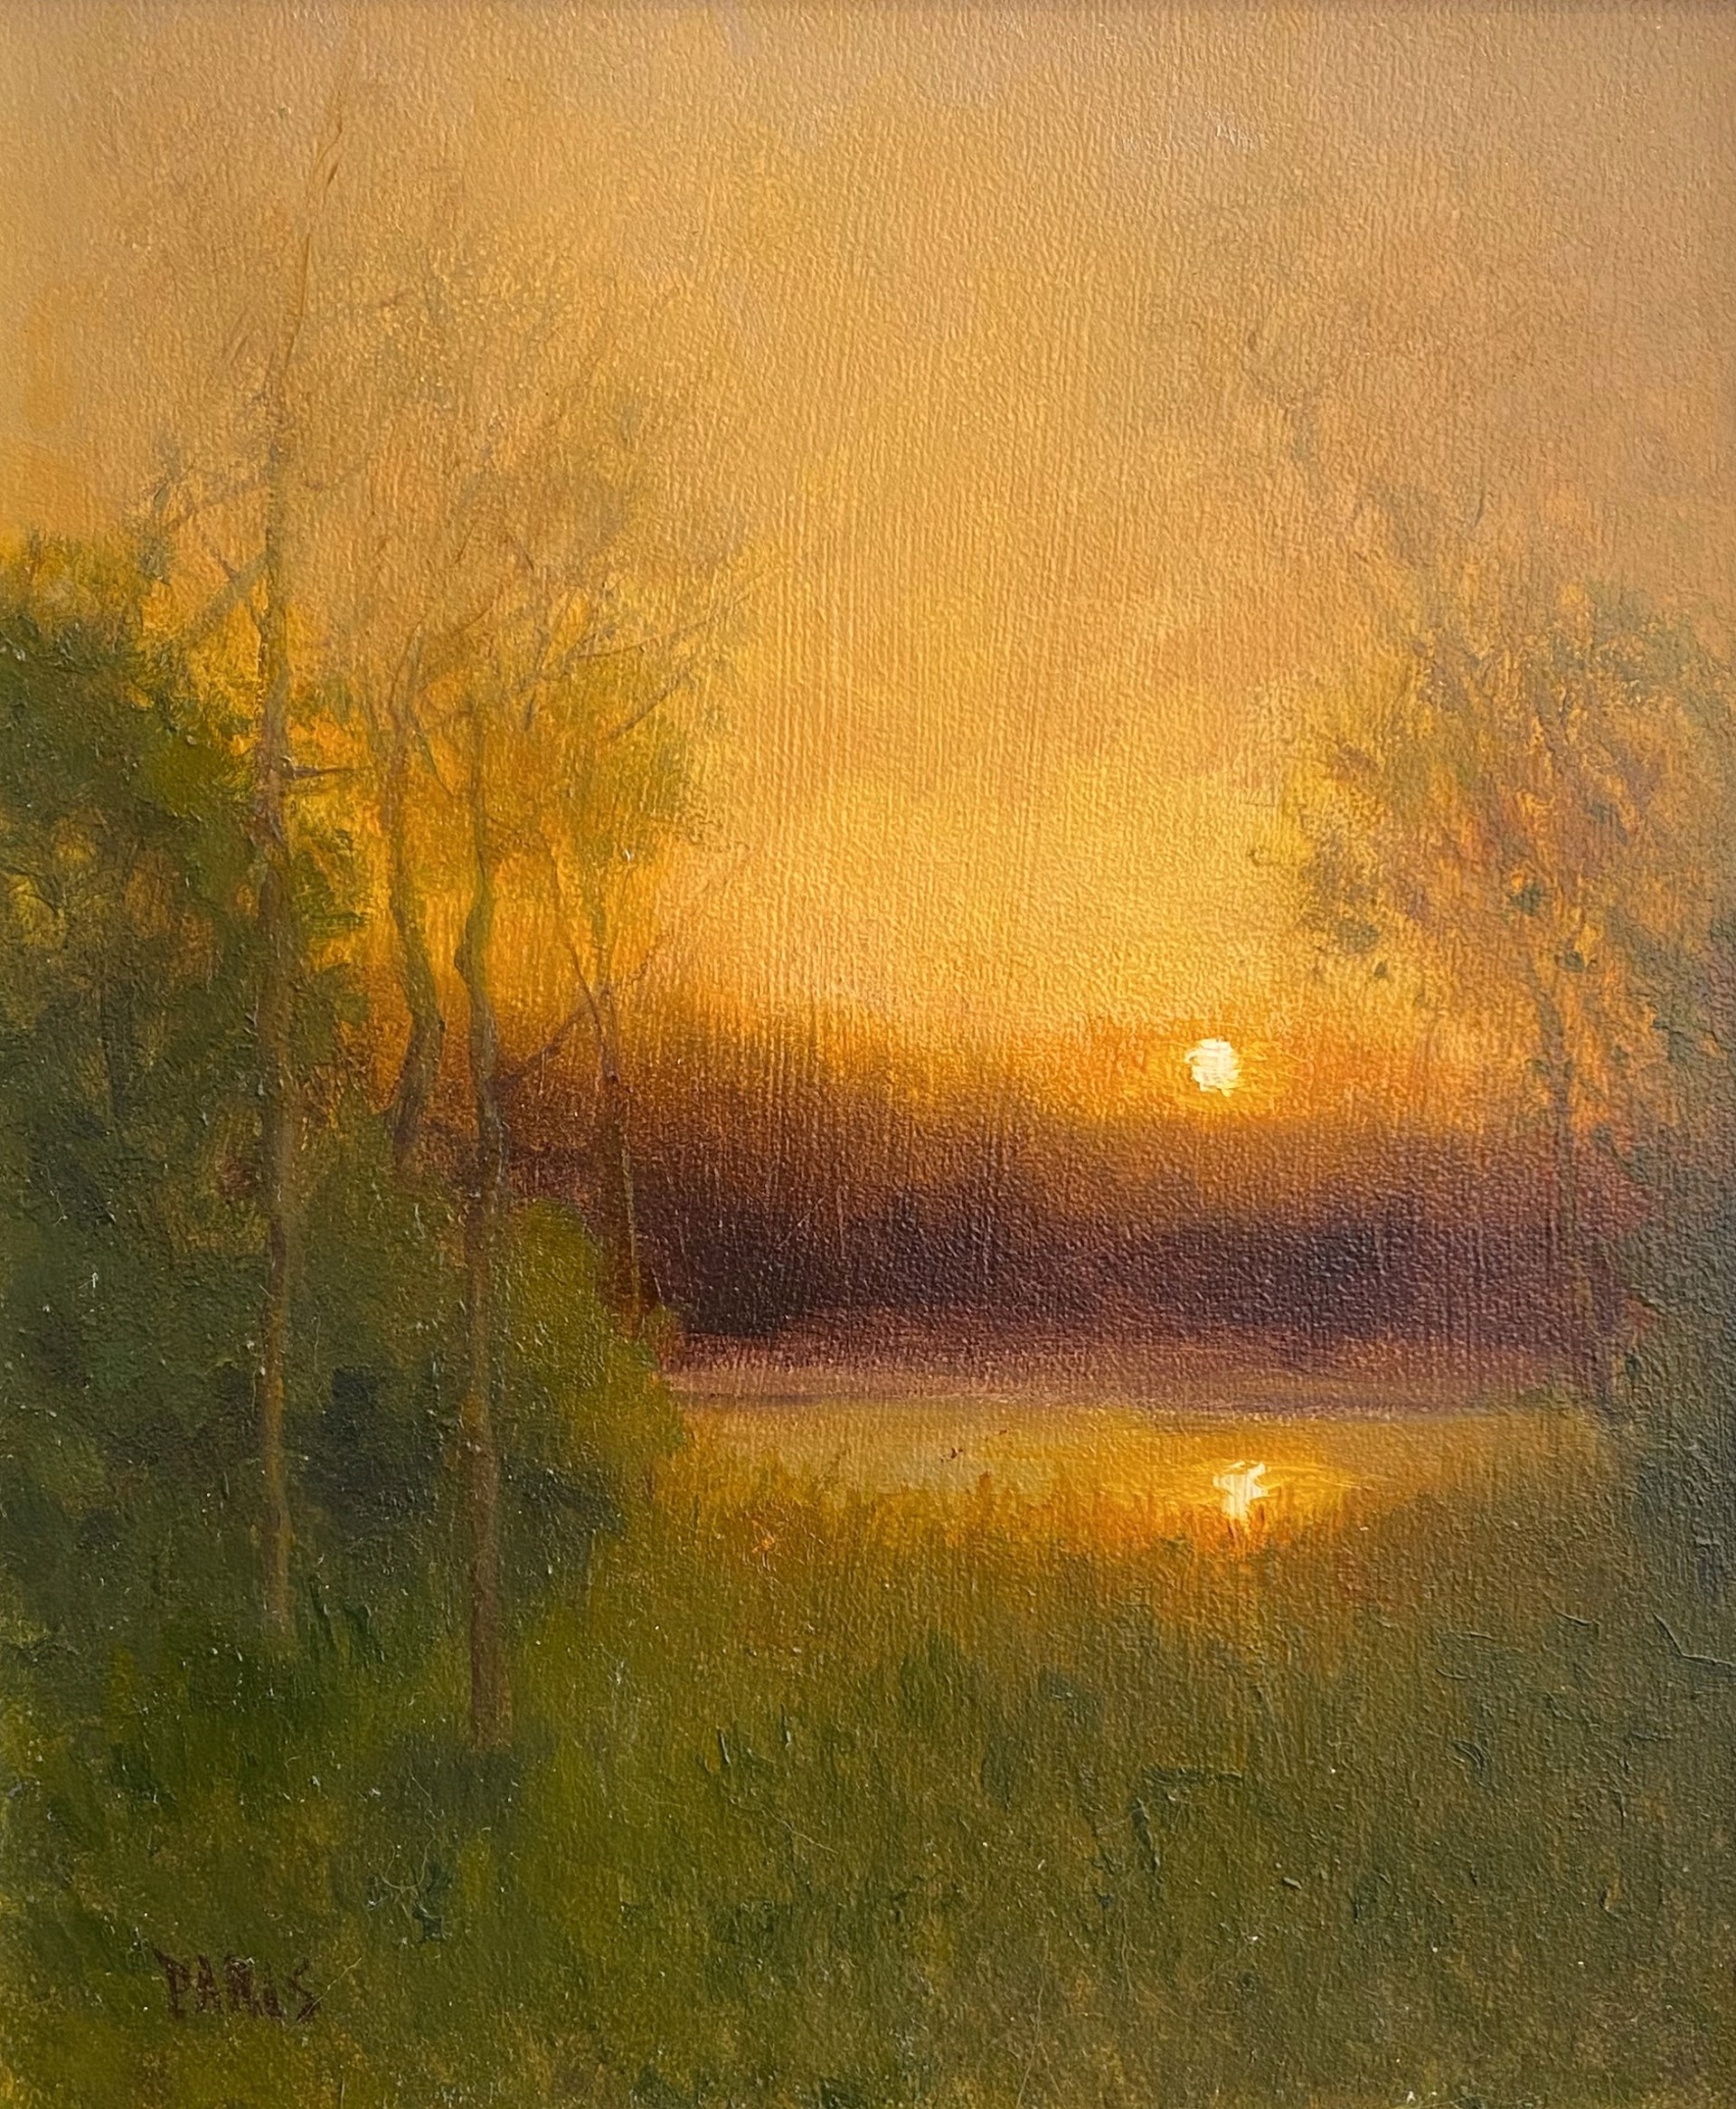 Sunrise at the pond by Deborah Paris